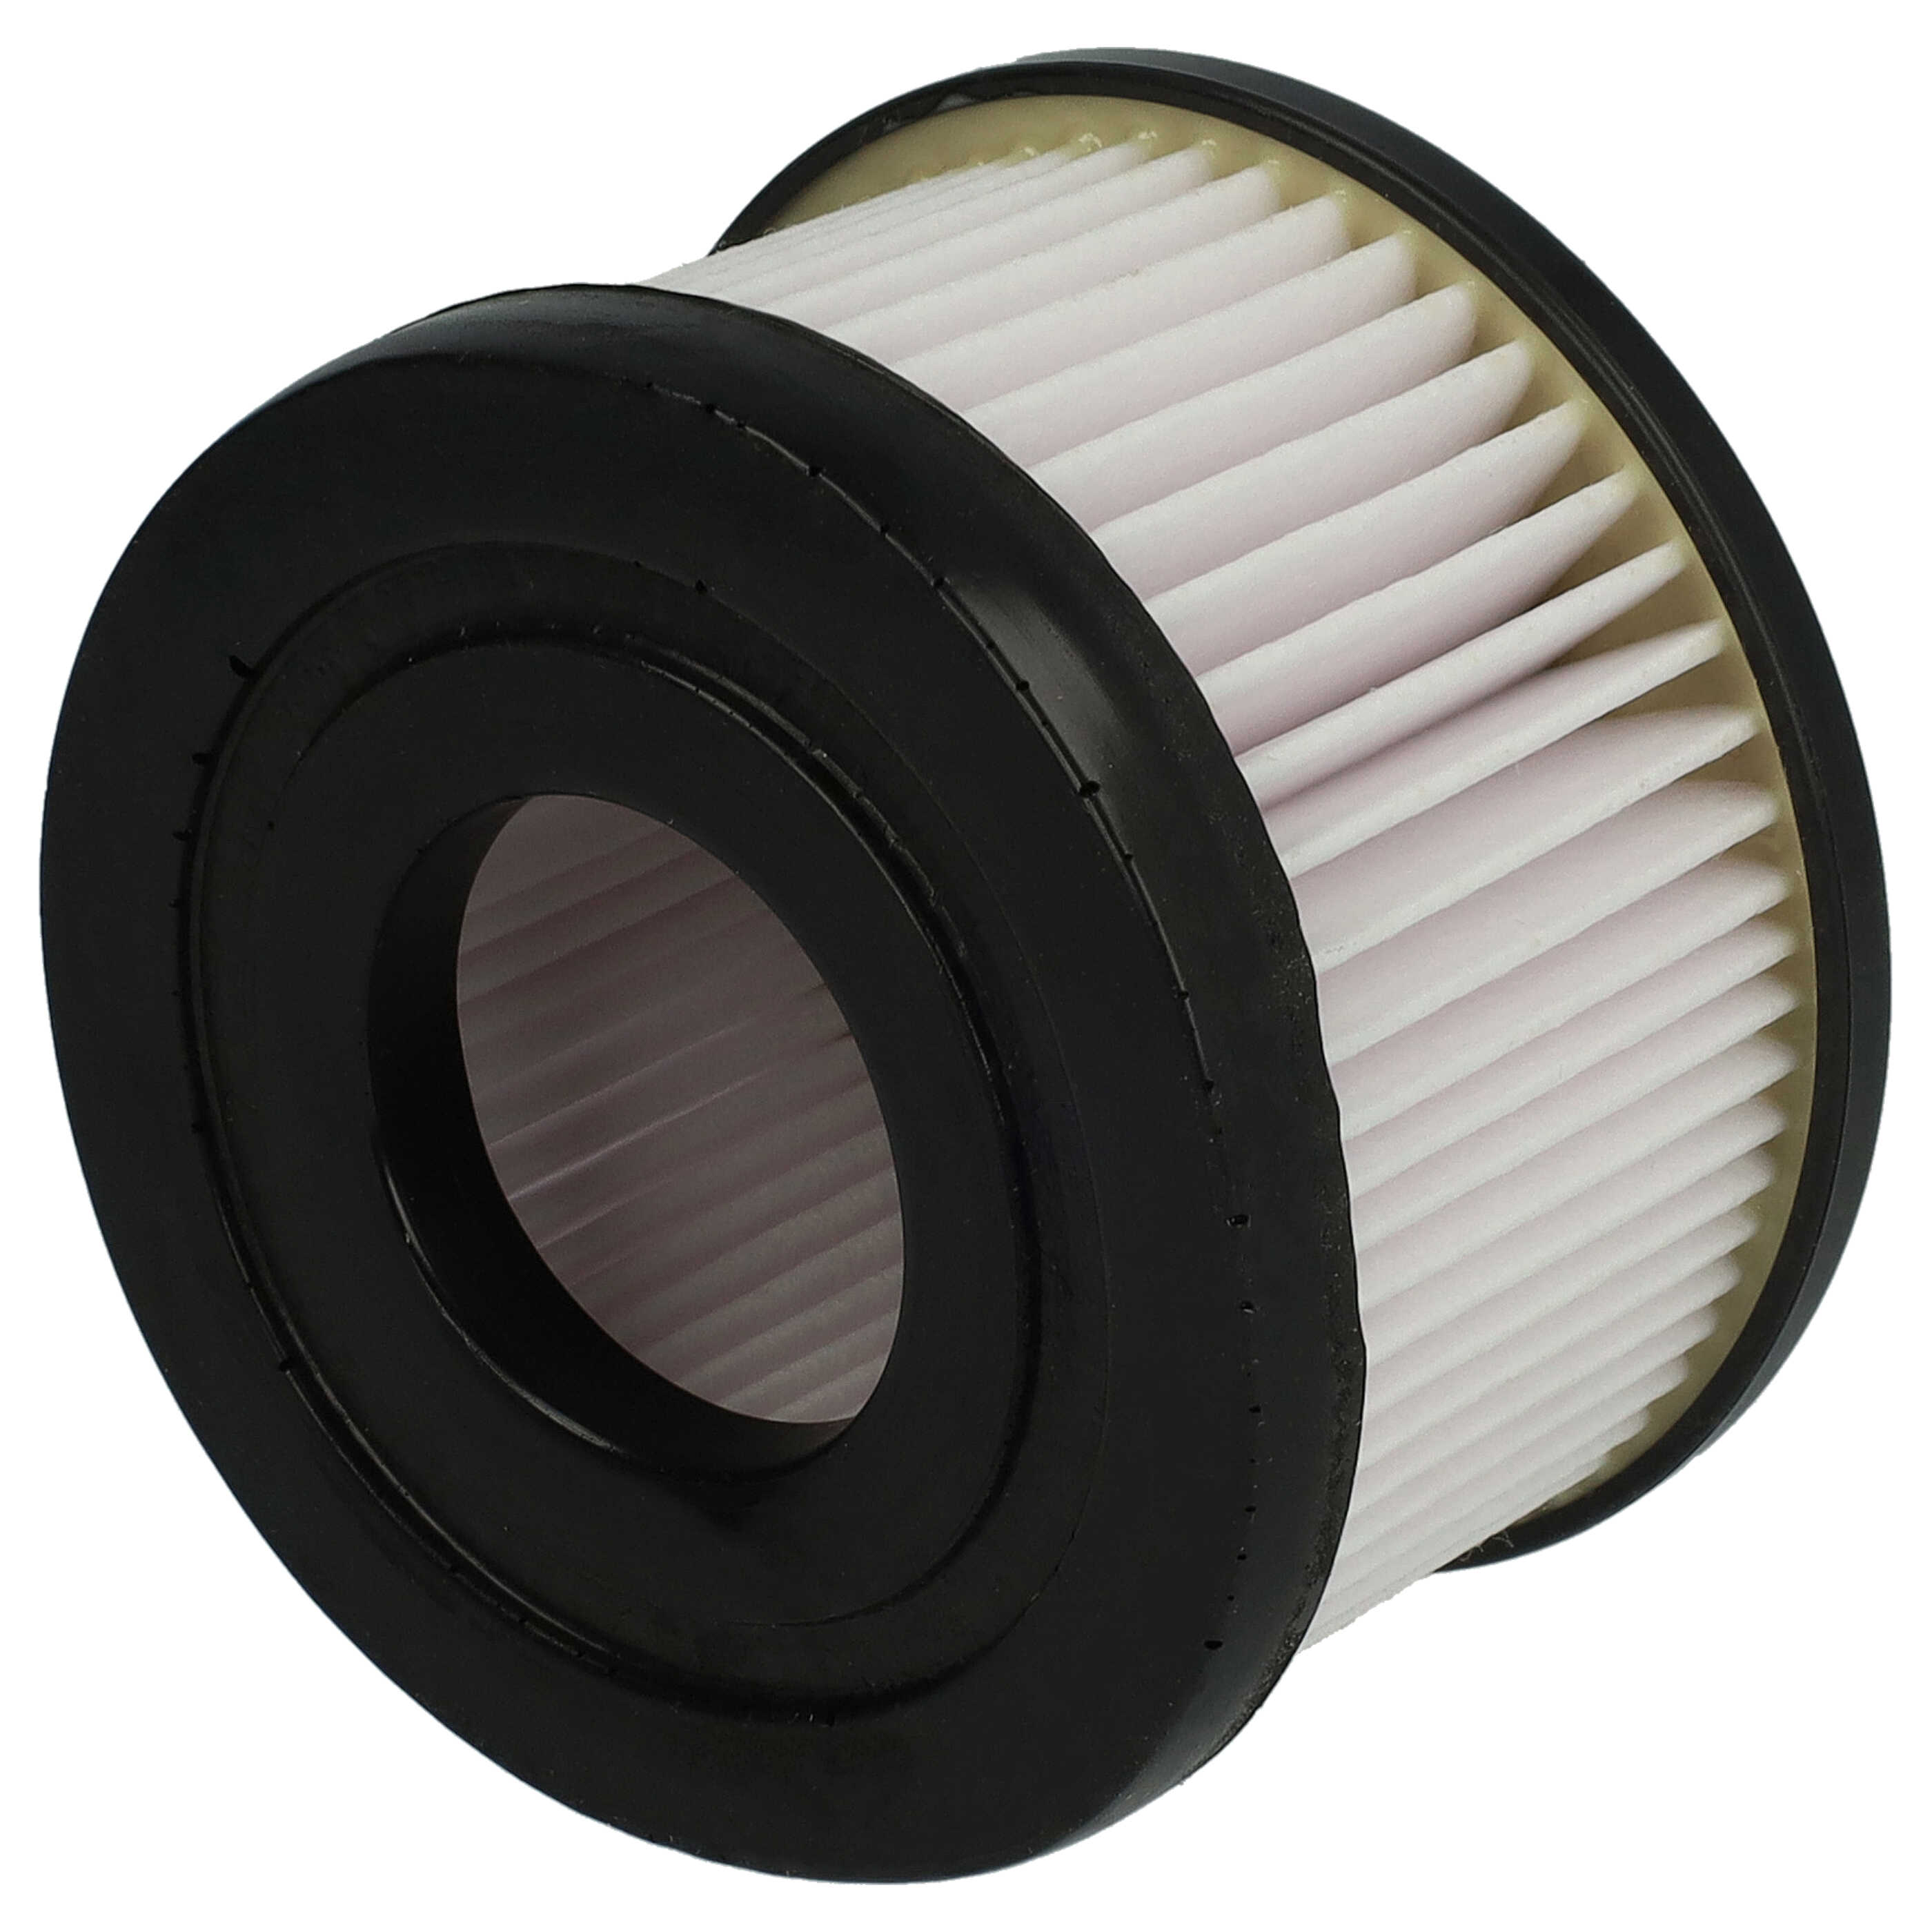 Filtro reemplaza Rowenta ZR009004, 3221614007446 para aspiradora - filtro plisado, negro / blanco